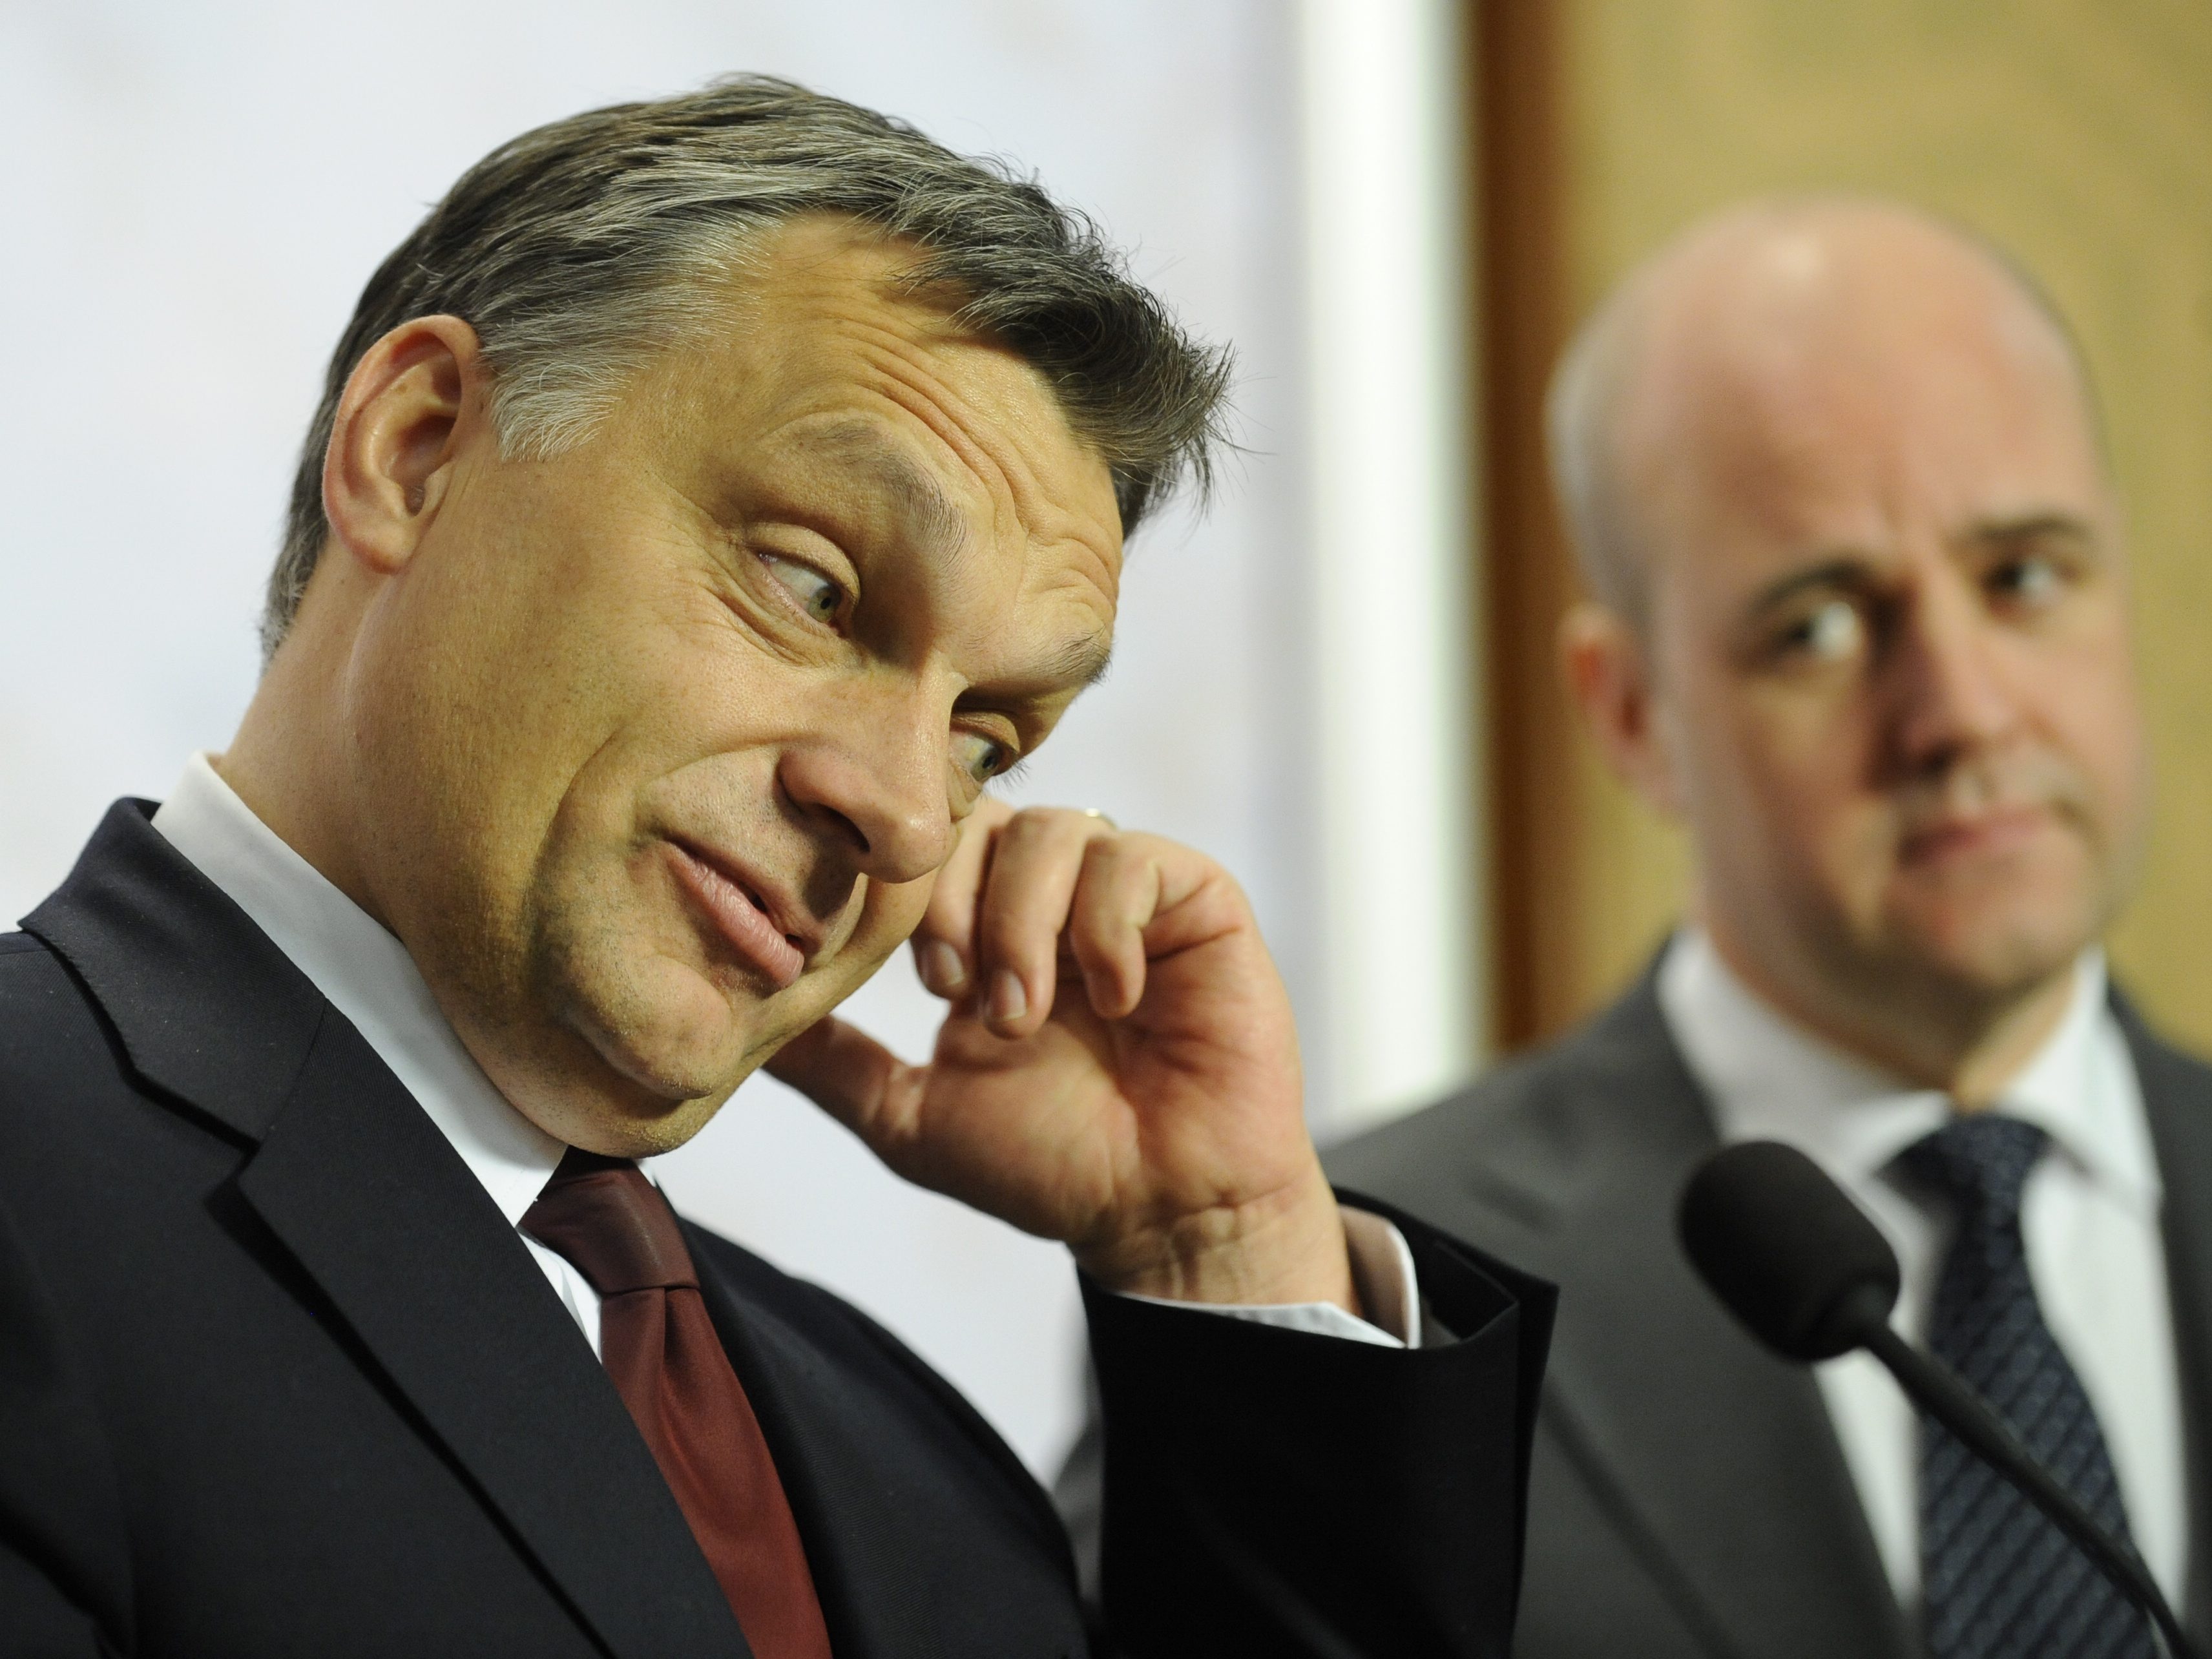 Viktor Orban, Integritet, Pressfrihet, Yttrandefrihet, Ungern, Internet